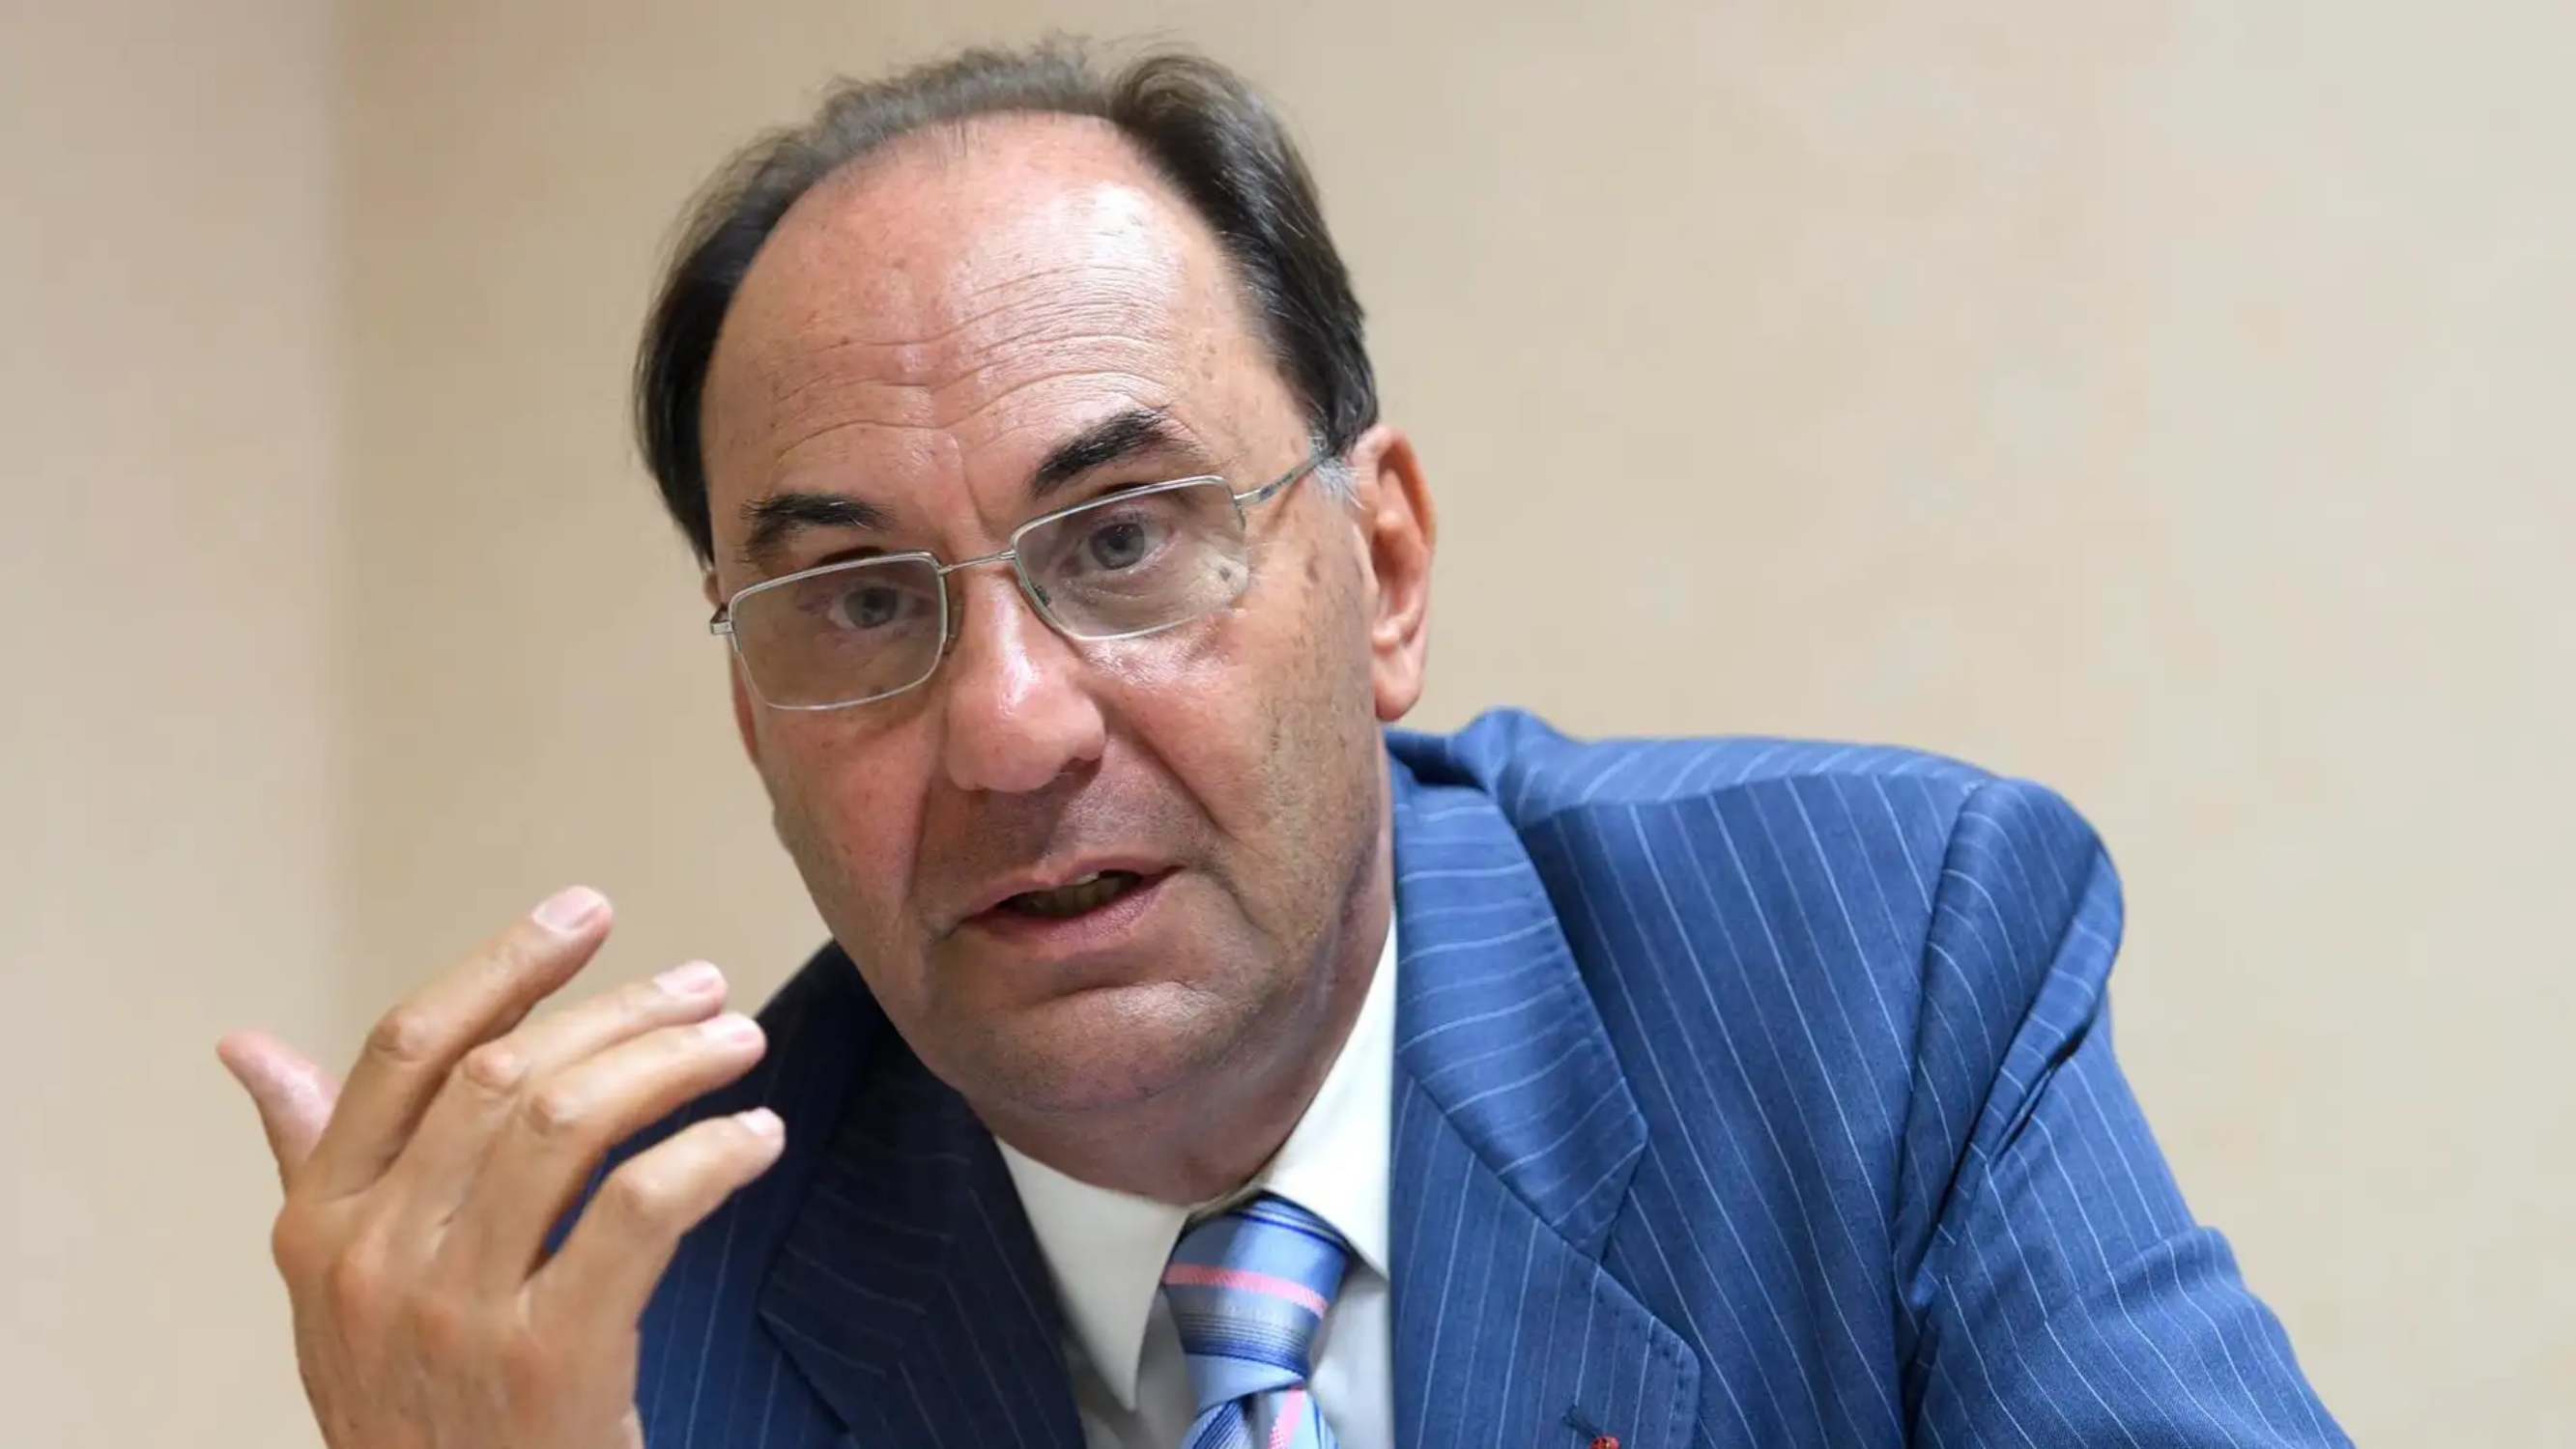 L'intent d'assassinat d’Alejo Vidal-Quadras s'investigarà com a terrorisme a l'Audiència Nacional